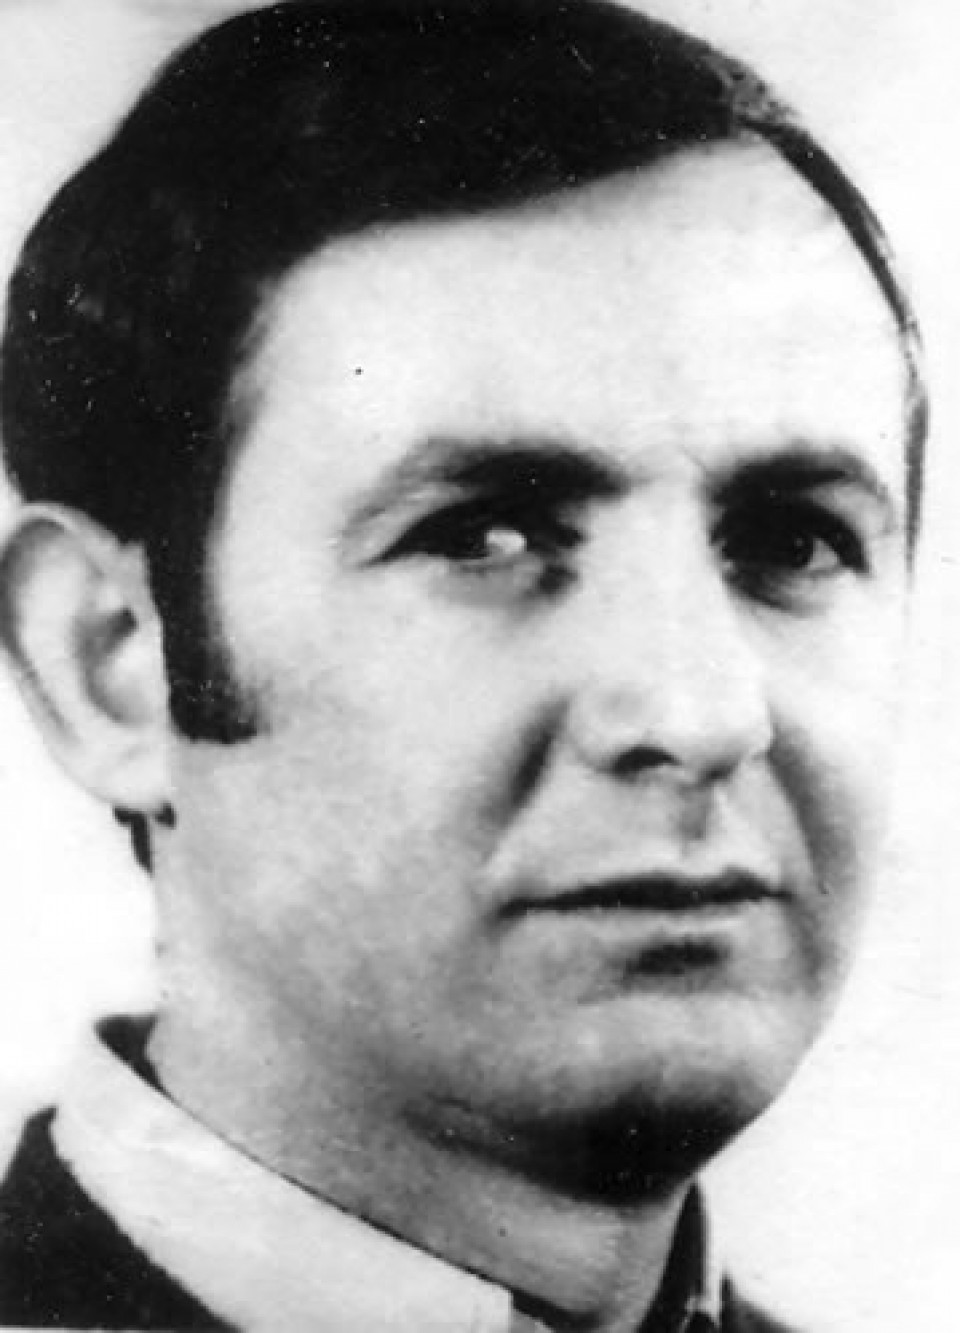 Martxoak 3 - 3 de marzo de 1976 - asesinado - Bienvenido Pereda Moral (32 años)